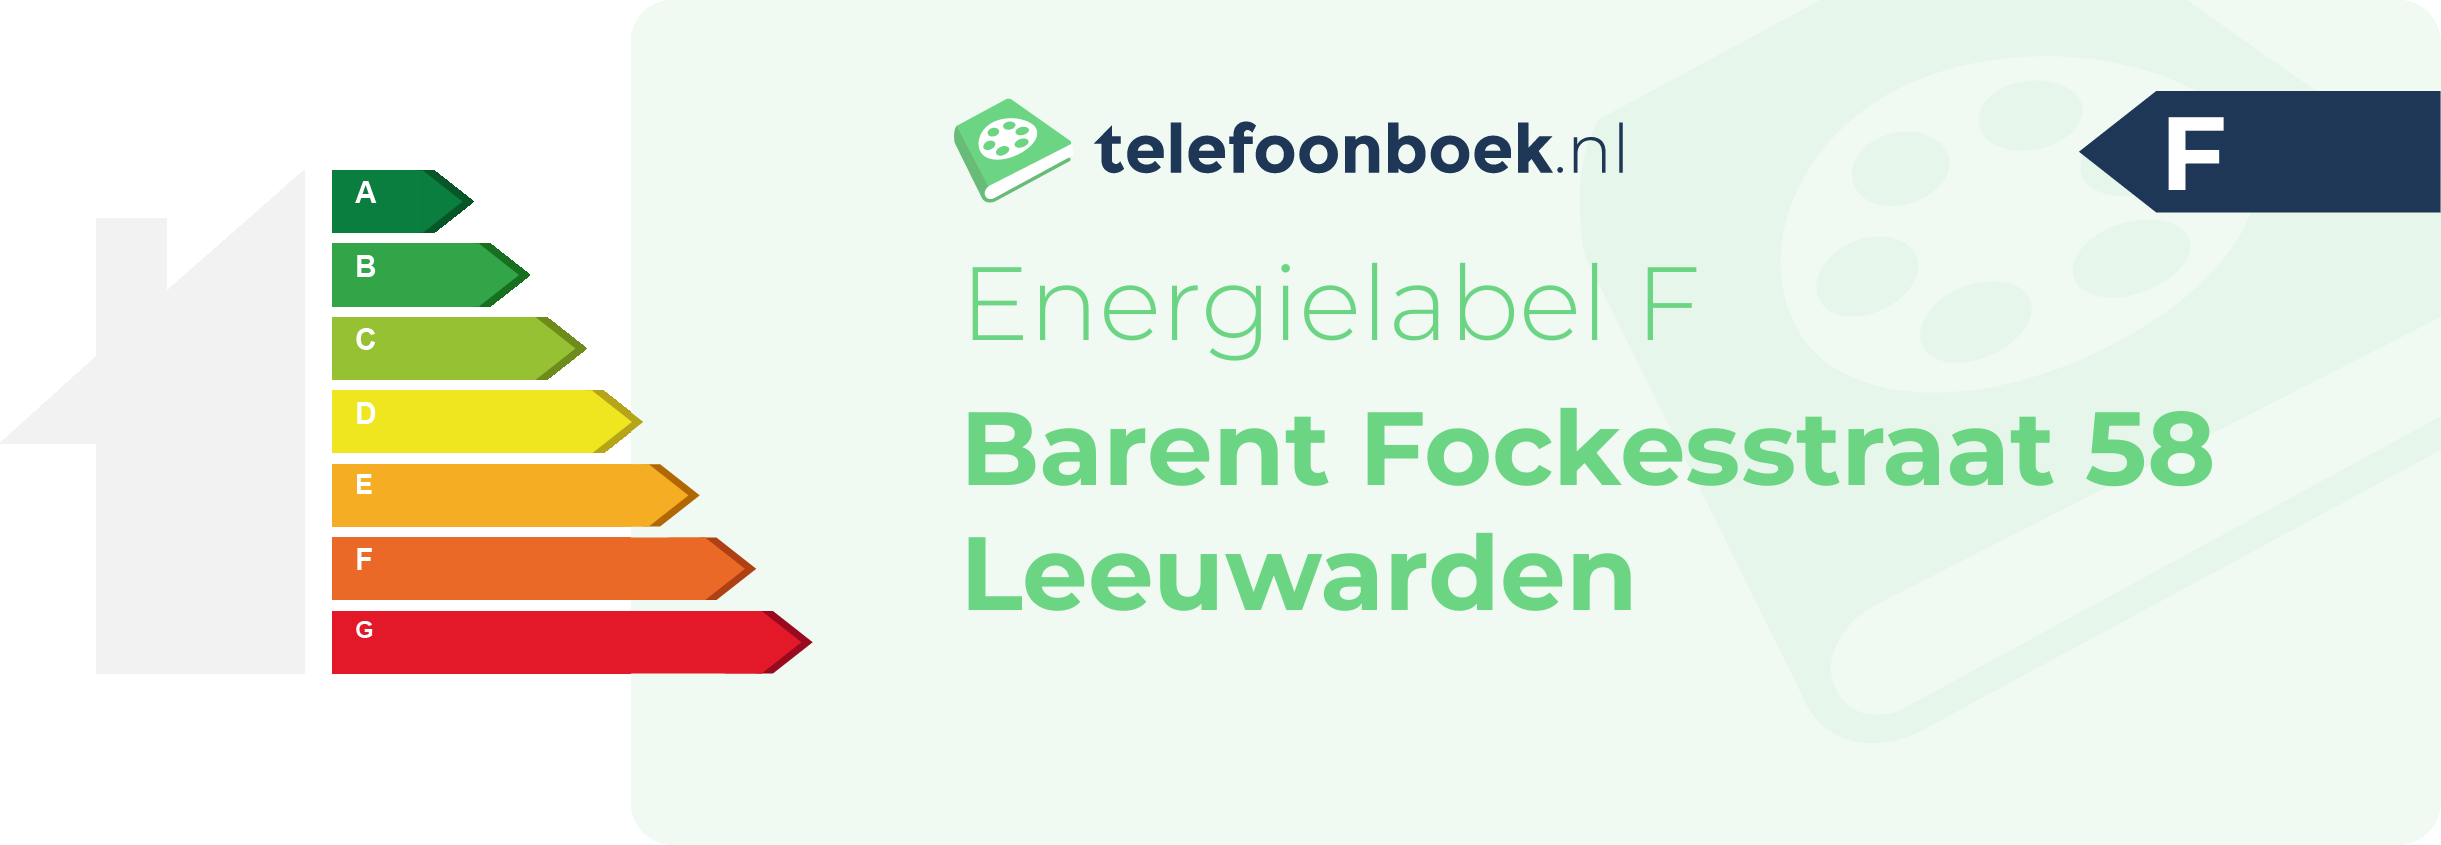 Energielabel Barent Fockesstraat 58 Leeuwarden